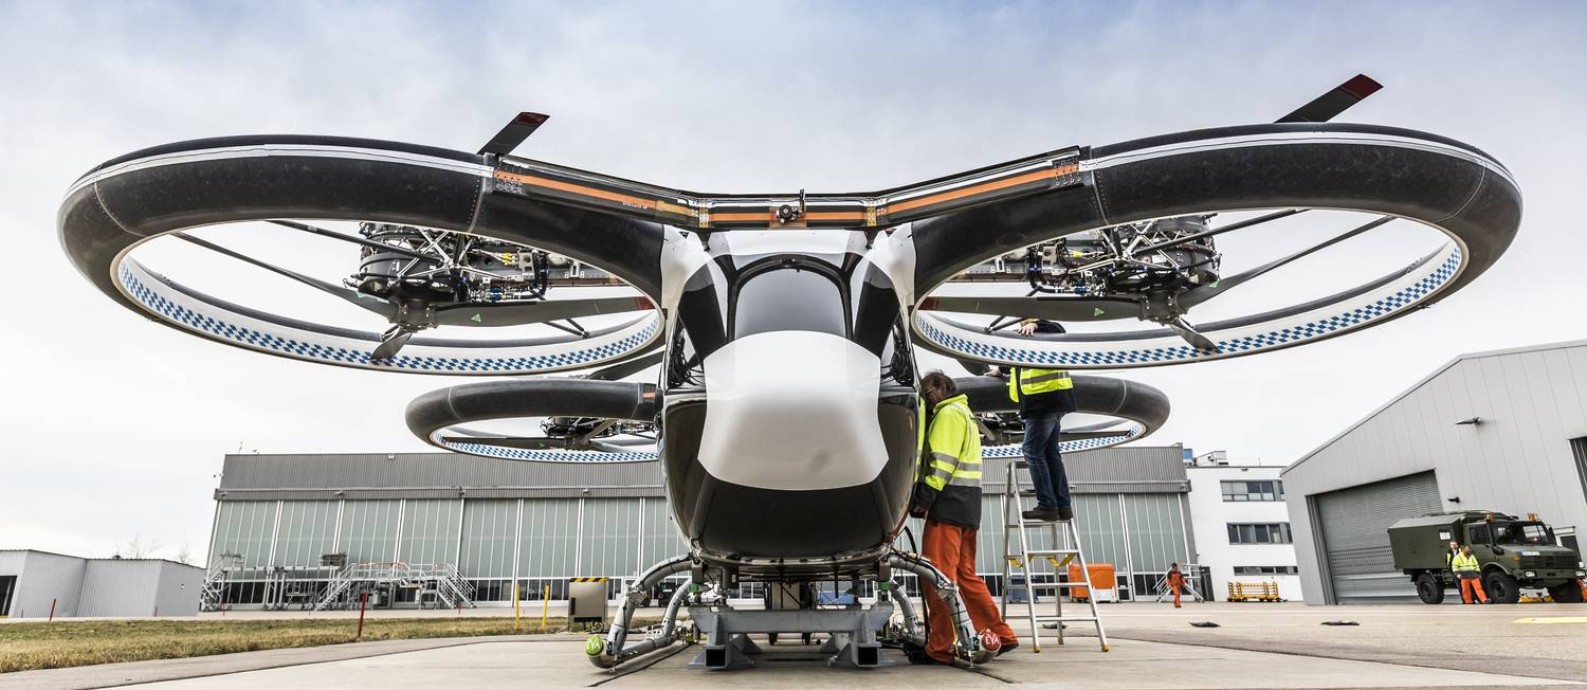 Terceira versão: Carro voador CityAirbus, da Airbus, é a mais nova versão do modelo inicial lançado pela empresa em 2018: primeiro voo está marcado para 2023 Foto: Christian D. Keller (c) Airbus H / Divulgação